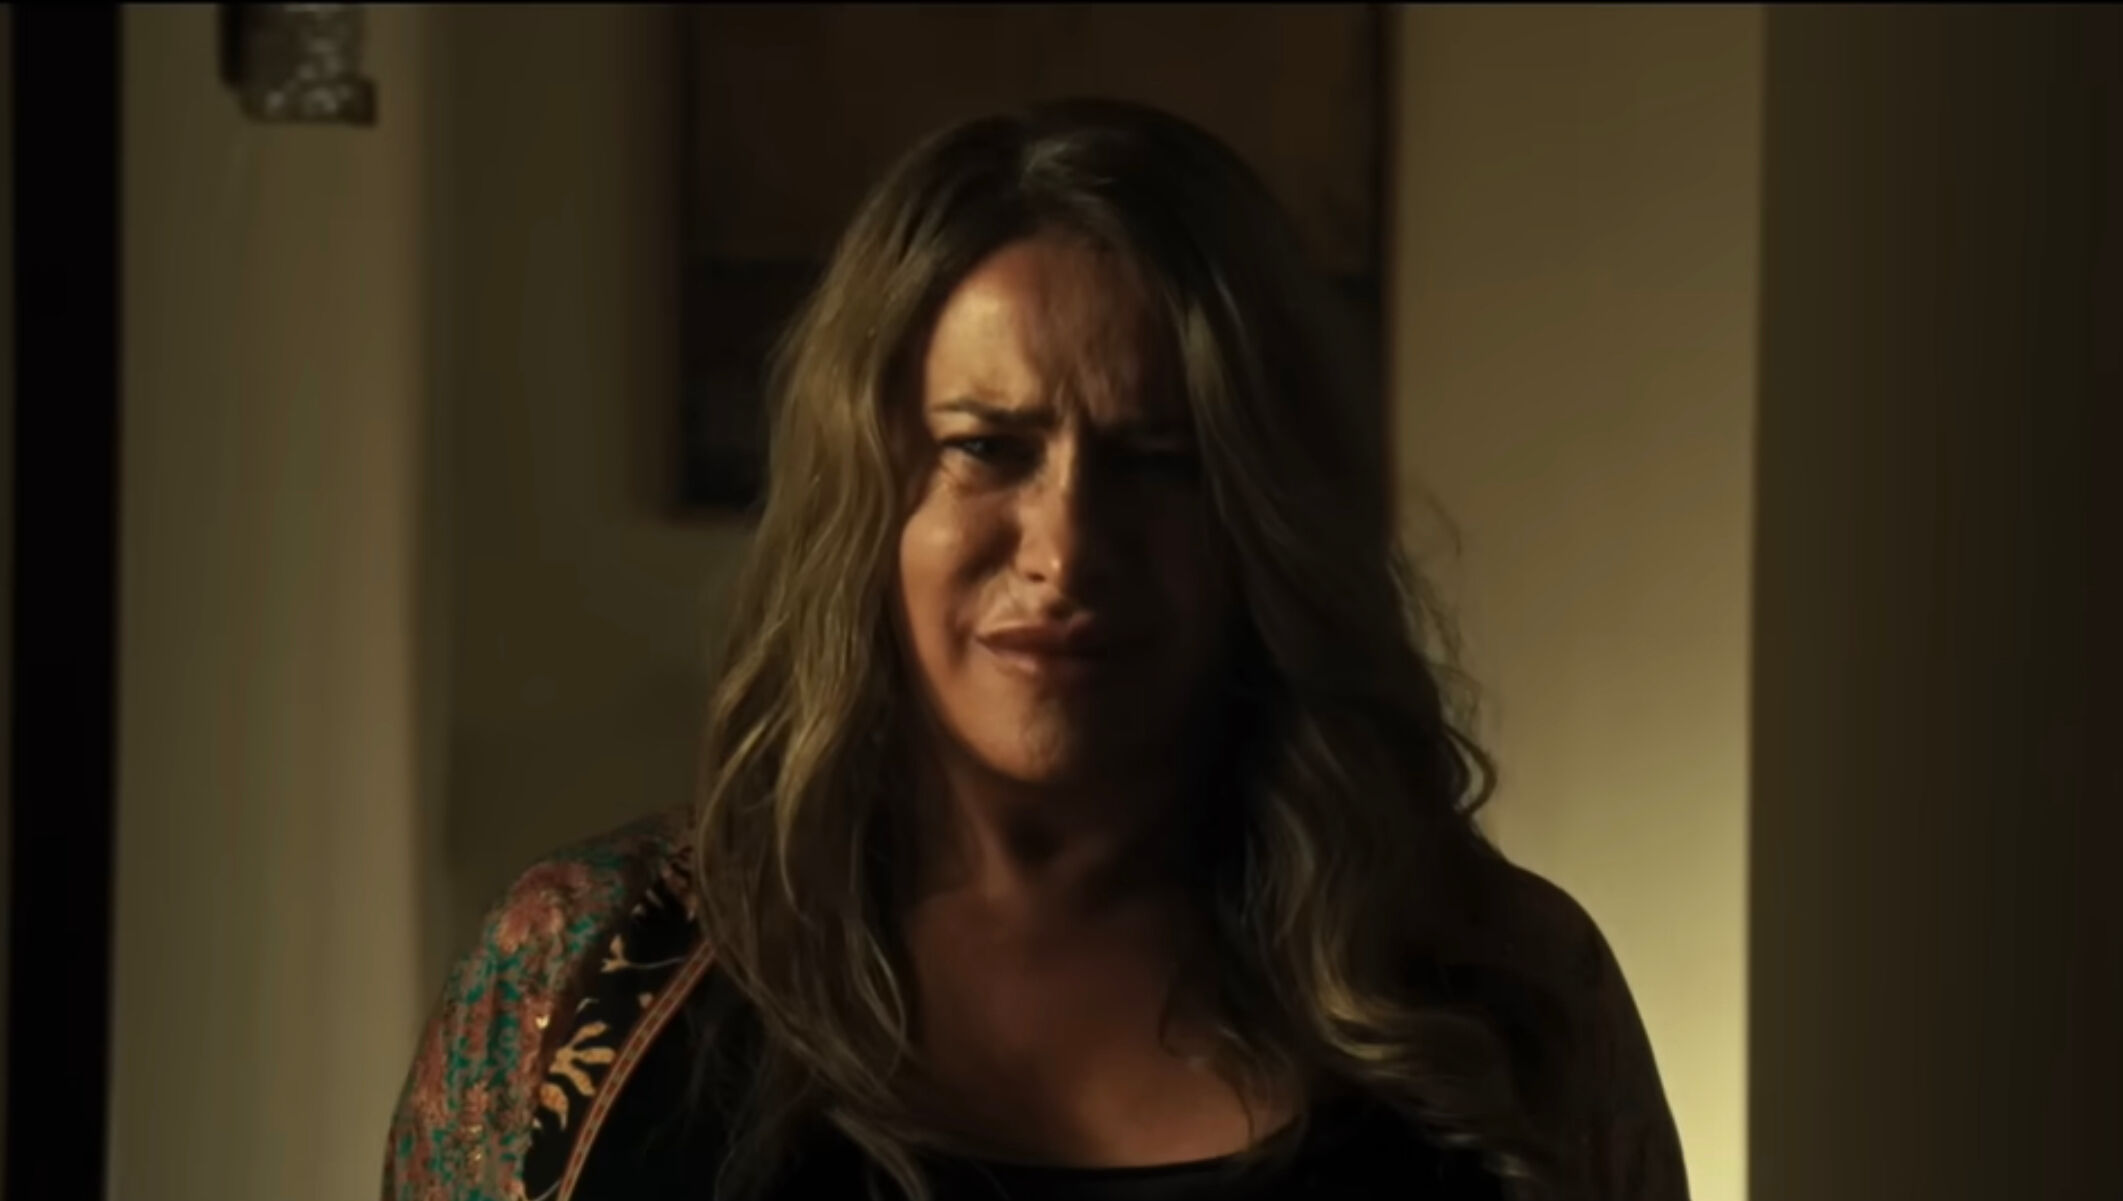 Karla Sofía Gascón in the teaser trailer for "Emilia Pérez."